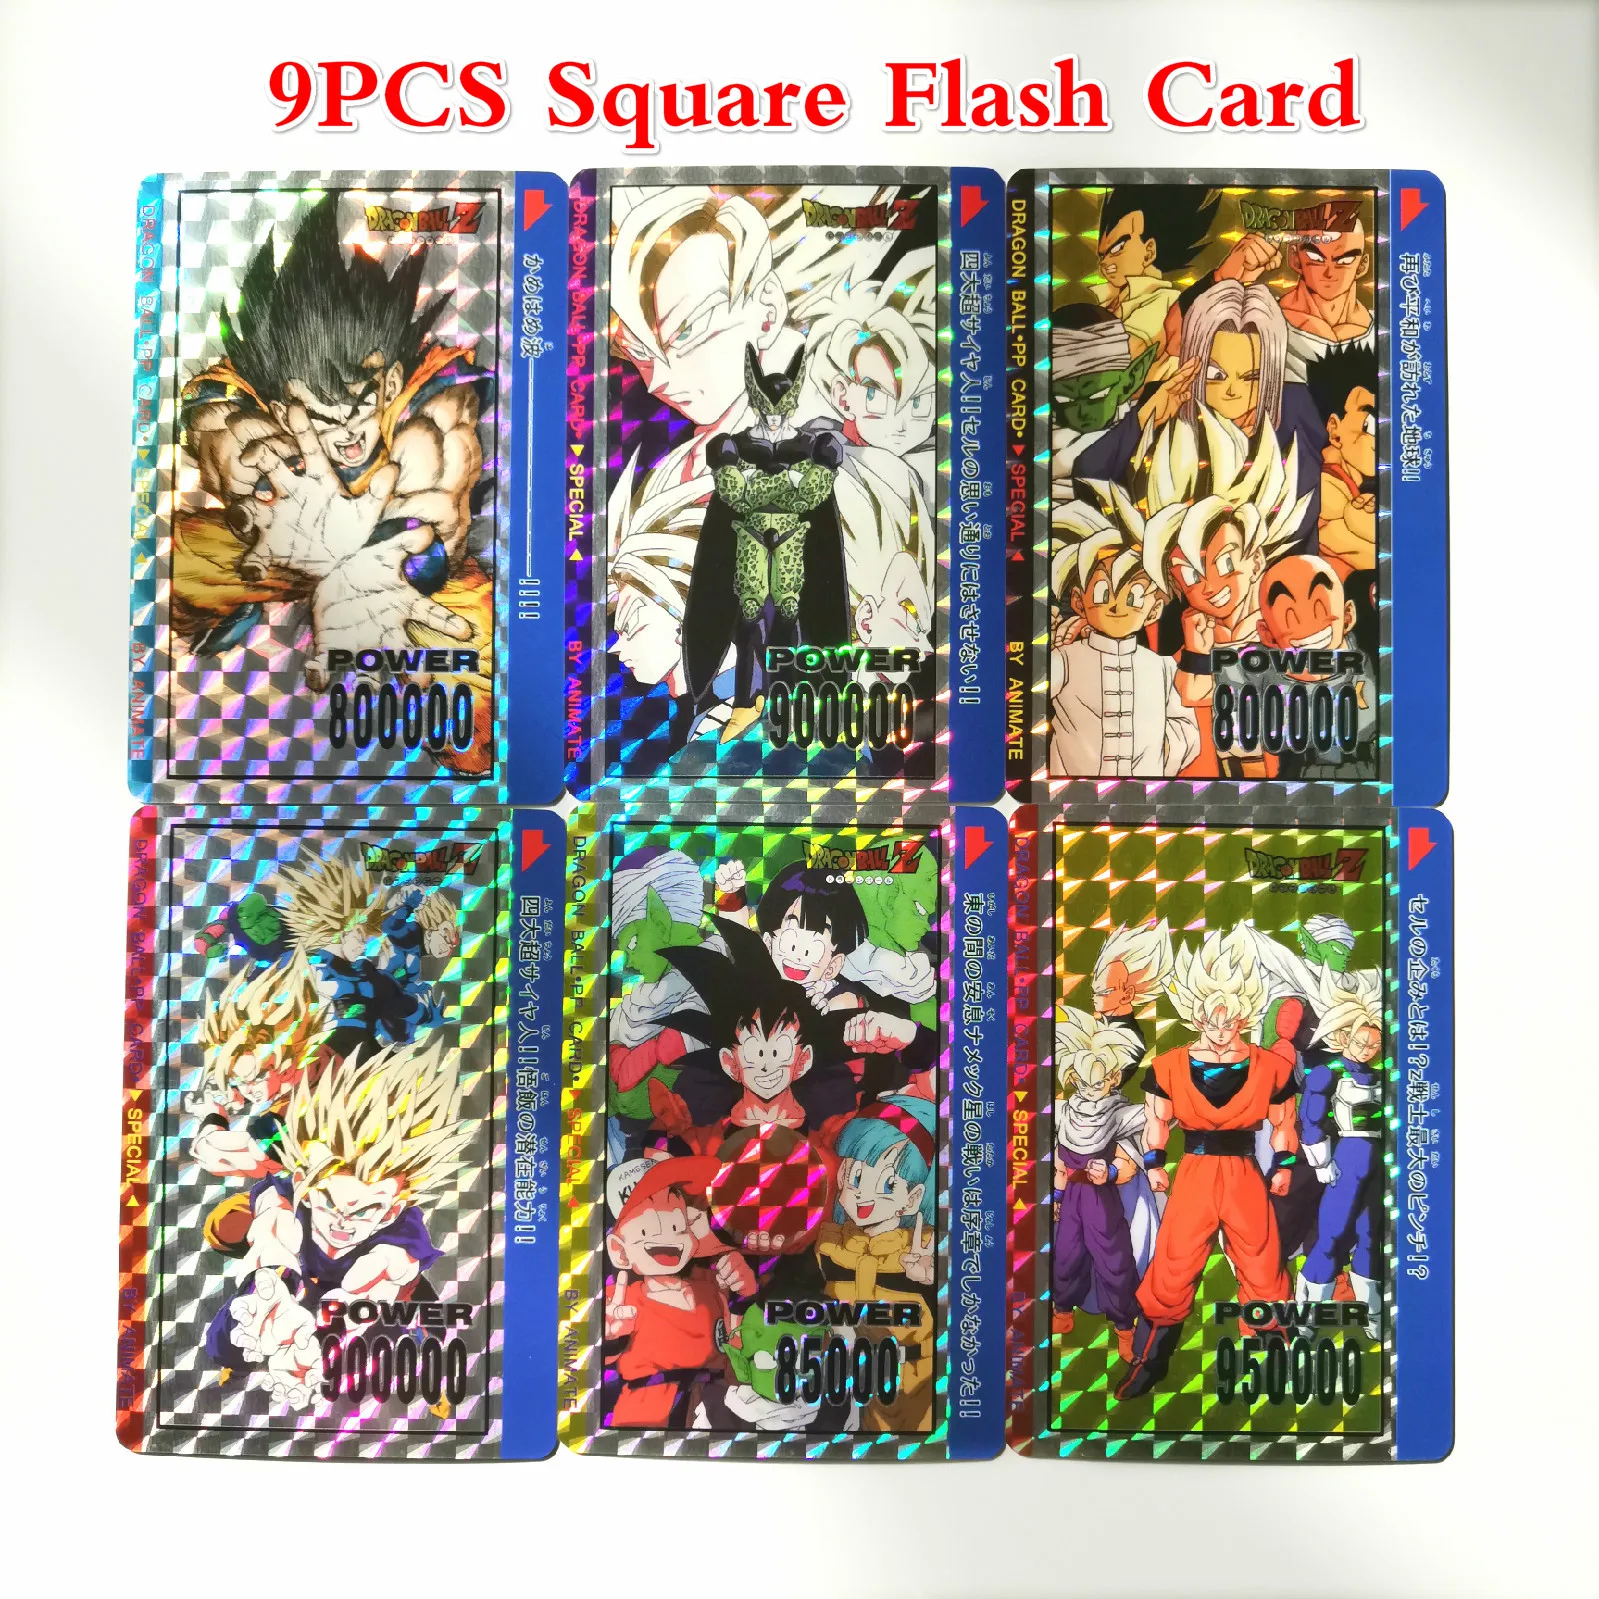 10 шт./компл. супер Dragon Ball Z PP героев карточной ультра инстинкт персонажи Гоку, Веджета, игровая коллекция карт - Цвет: 9pcs Square Flash